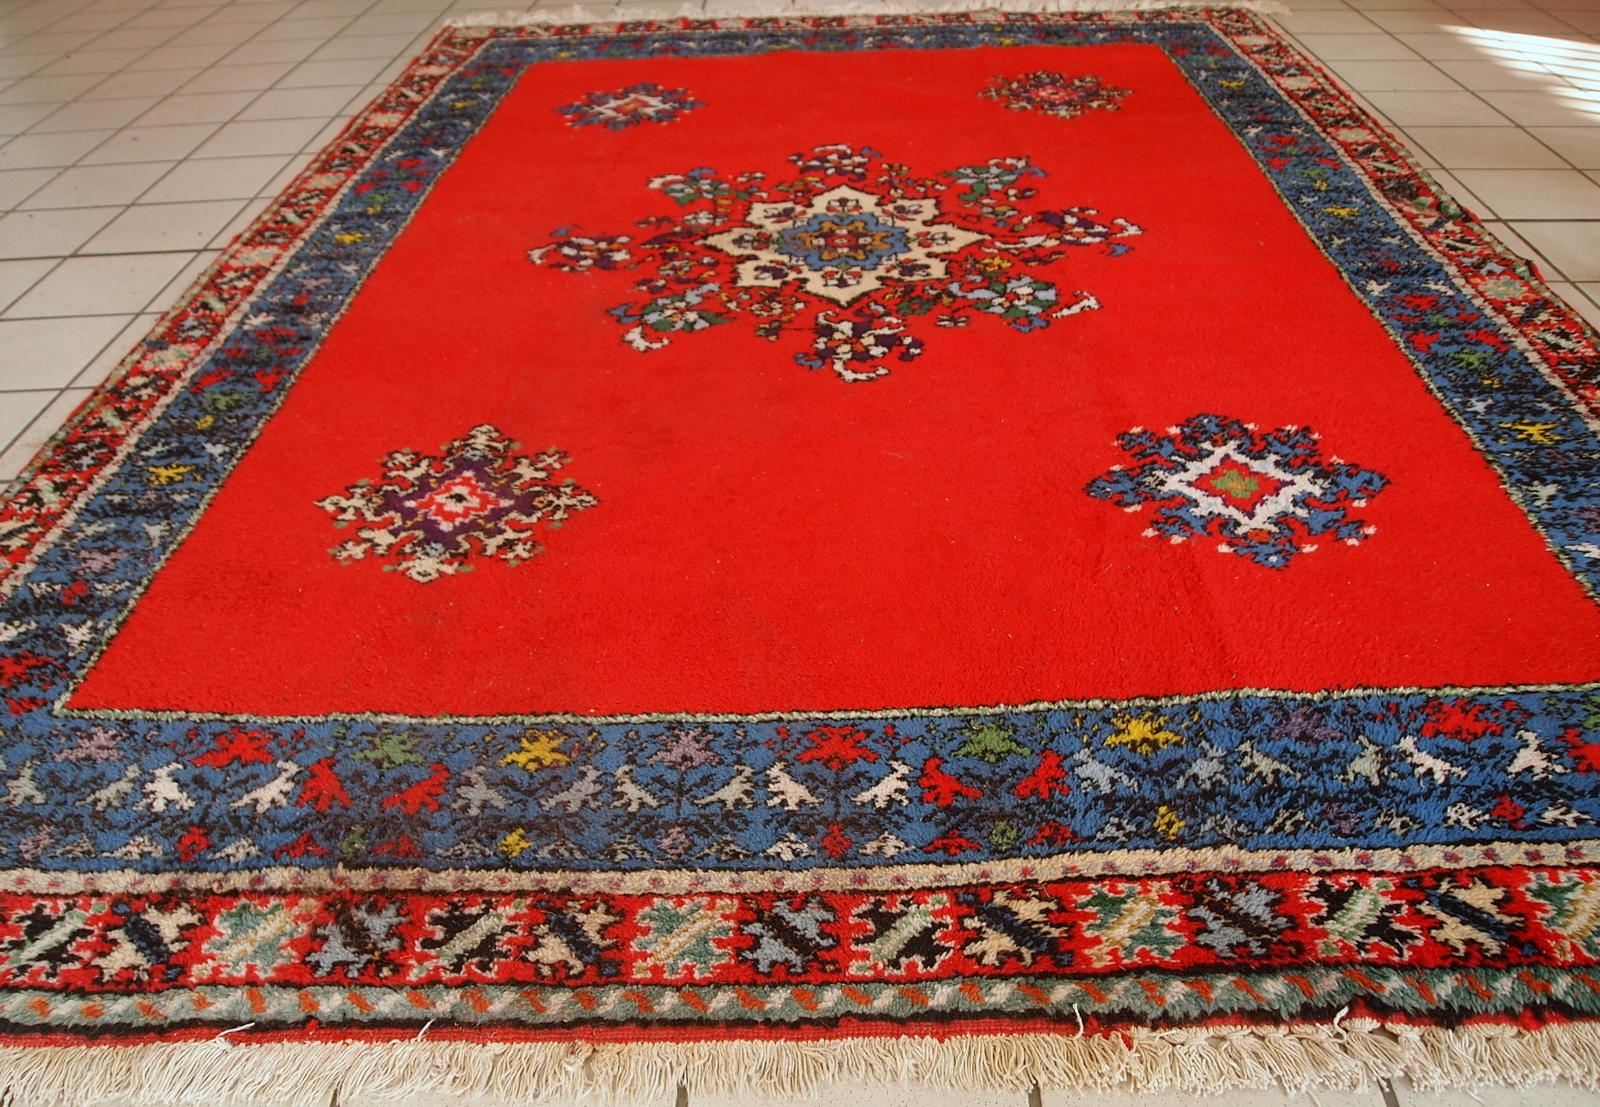 Handgefertigter Vintage-Teppich der Berber in Marokko aus knallroter Wolle. Der Teppich stammt aus dem Ende des 20. Jahrhunderts und ist in gutem Originalzustand.

-Zustand: original gut,

-ca. 1970er Jahre,

-Größe: 5,6' x 7,9' (170cm x